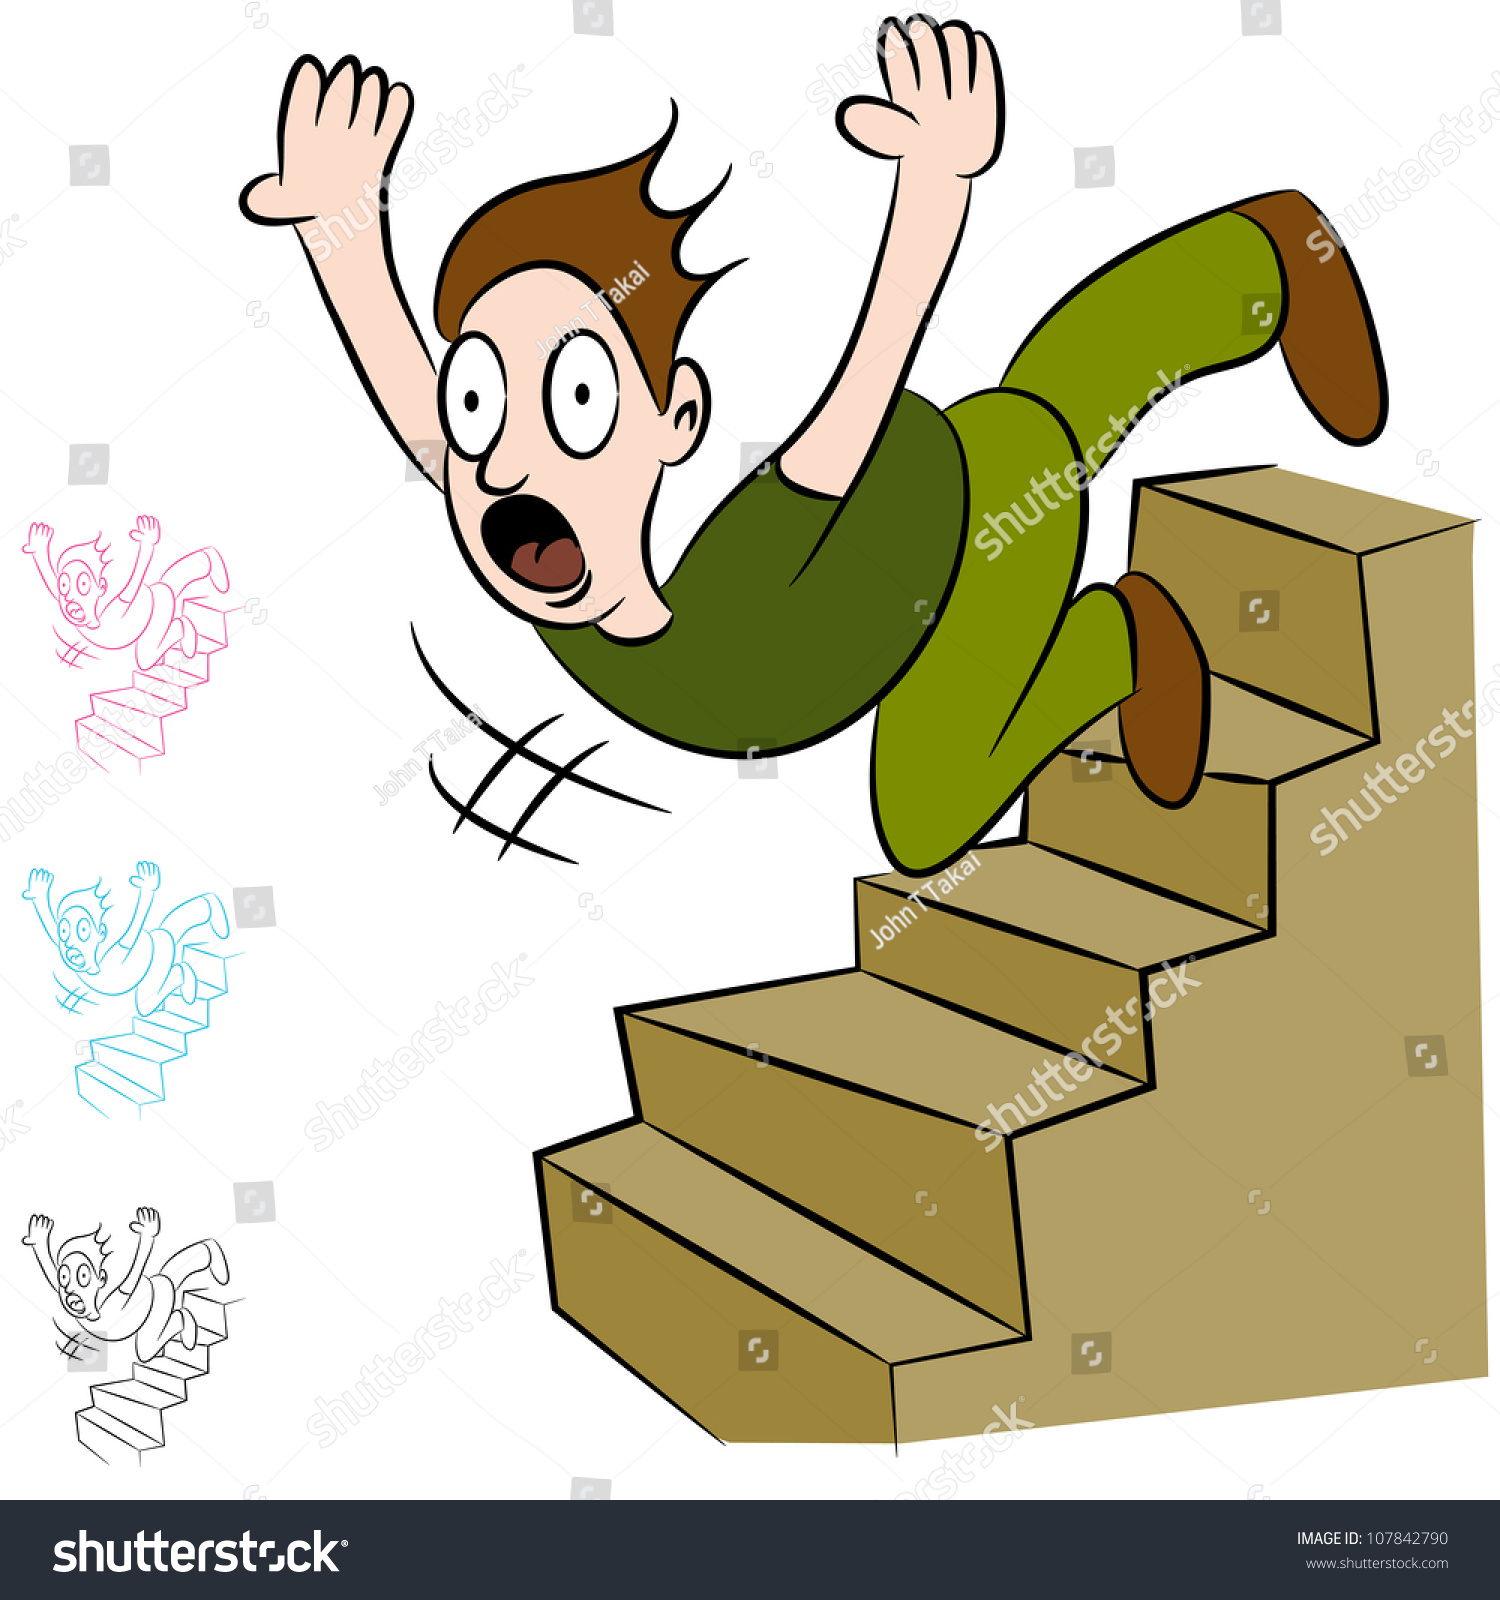 Fell over. Падает с лестницы. Прыгать с лестницы. Мальчик падает с лестницы. Человечек на ступеньках.